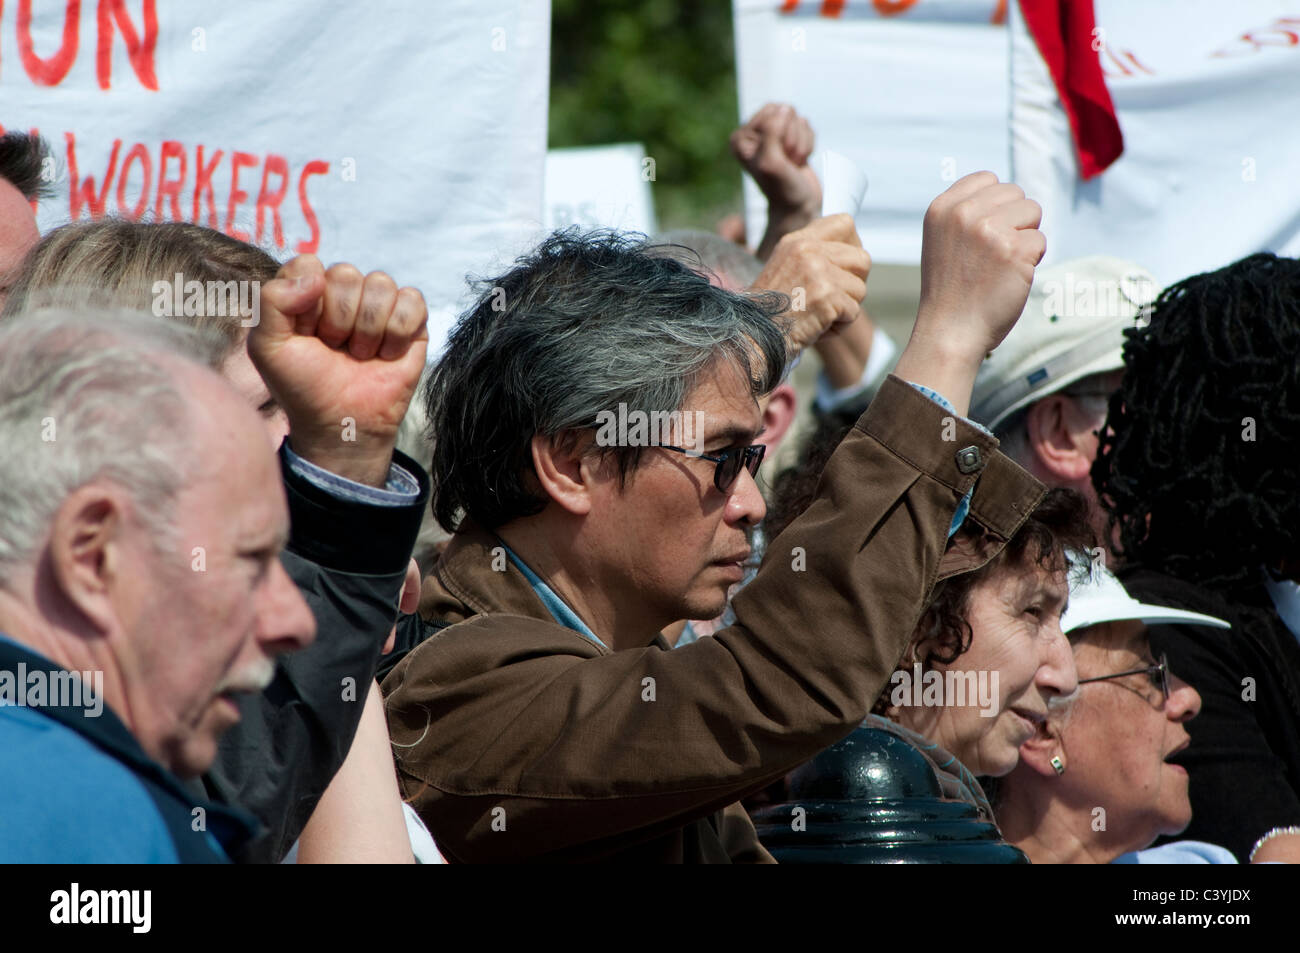 Mitglieder des Publikums mit erhobenen Fäusten auf Maikundgebung am Trafalgar Square, London, UK, 2011 Stockfoto